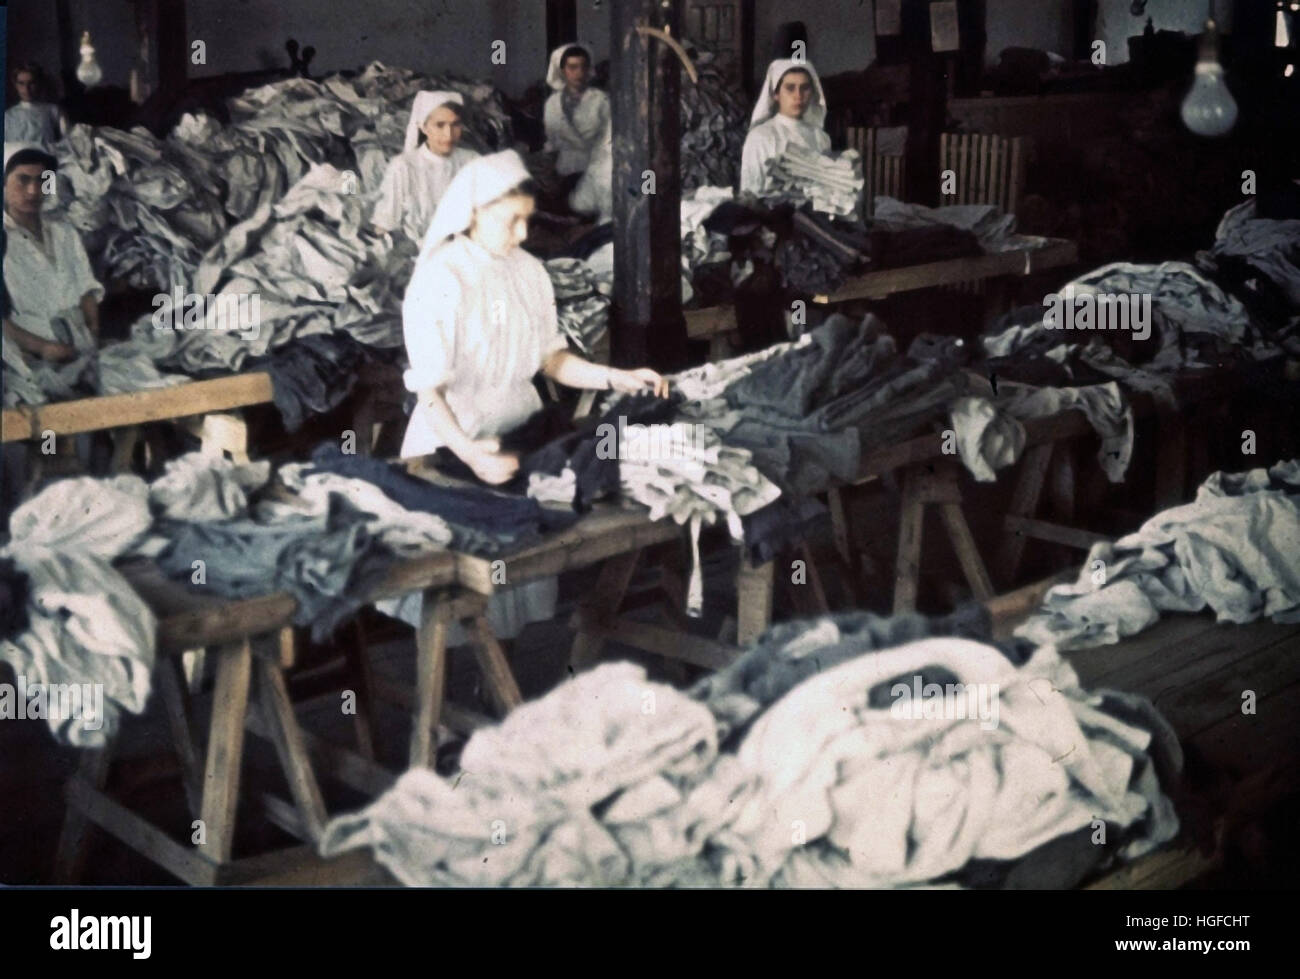 Ghetto Lodz, Litzmannstadt, Jewish women in the ghetto laundry, Poland 1940, World War II, Stock Photo